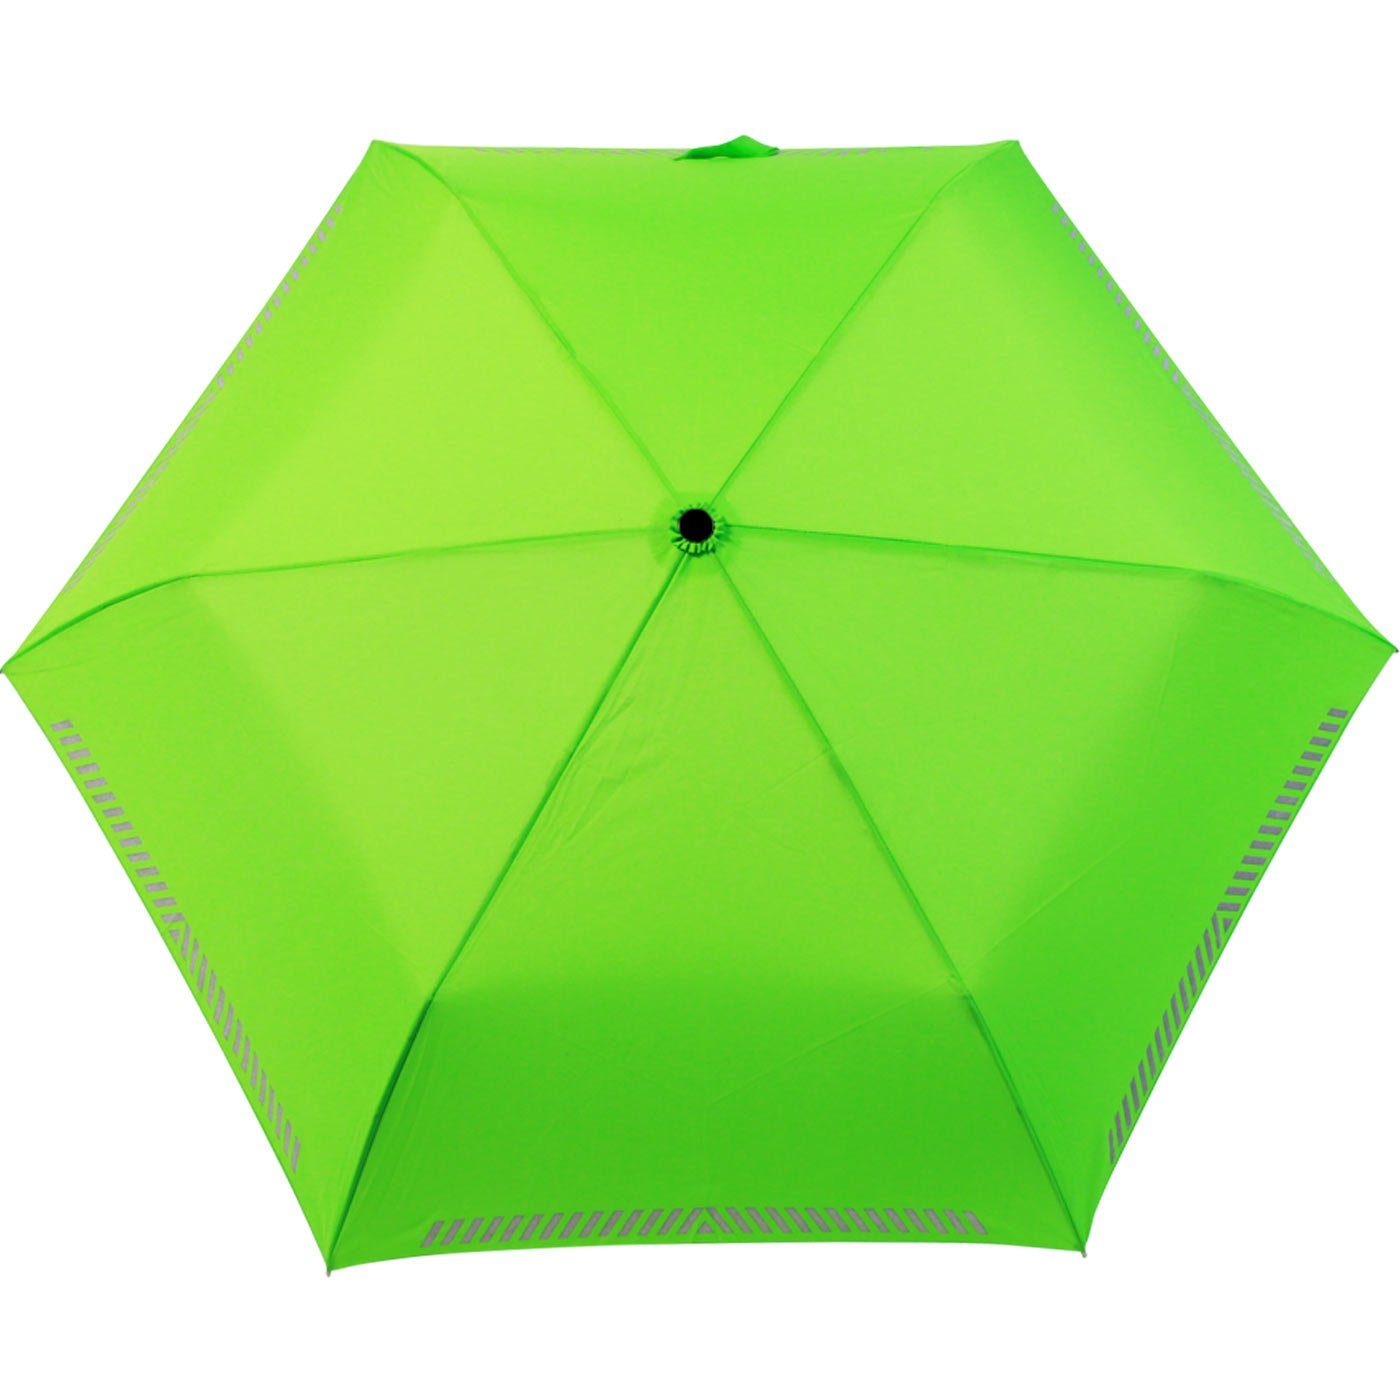 Reflex neon-grün Safety Kinderschirm leicht, Taschenregenschirm extra Mini iX-brella reflektierend